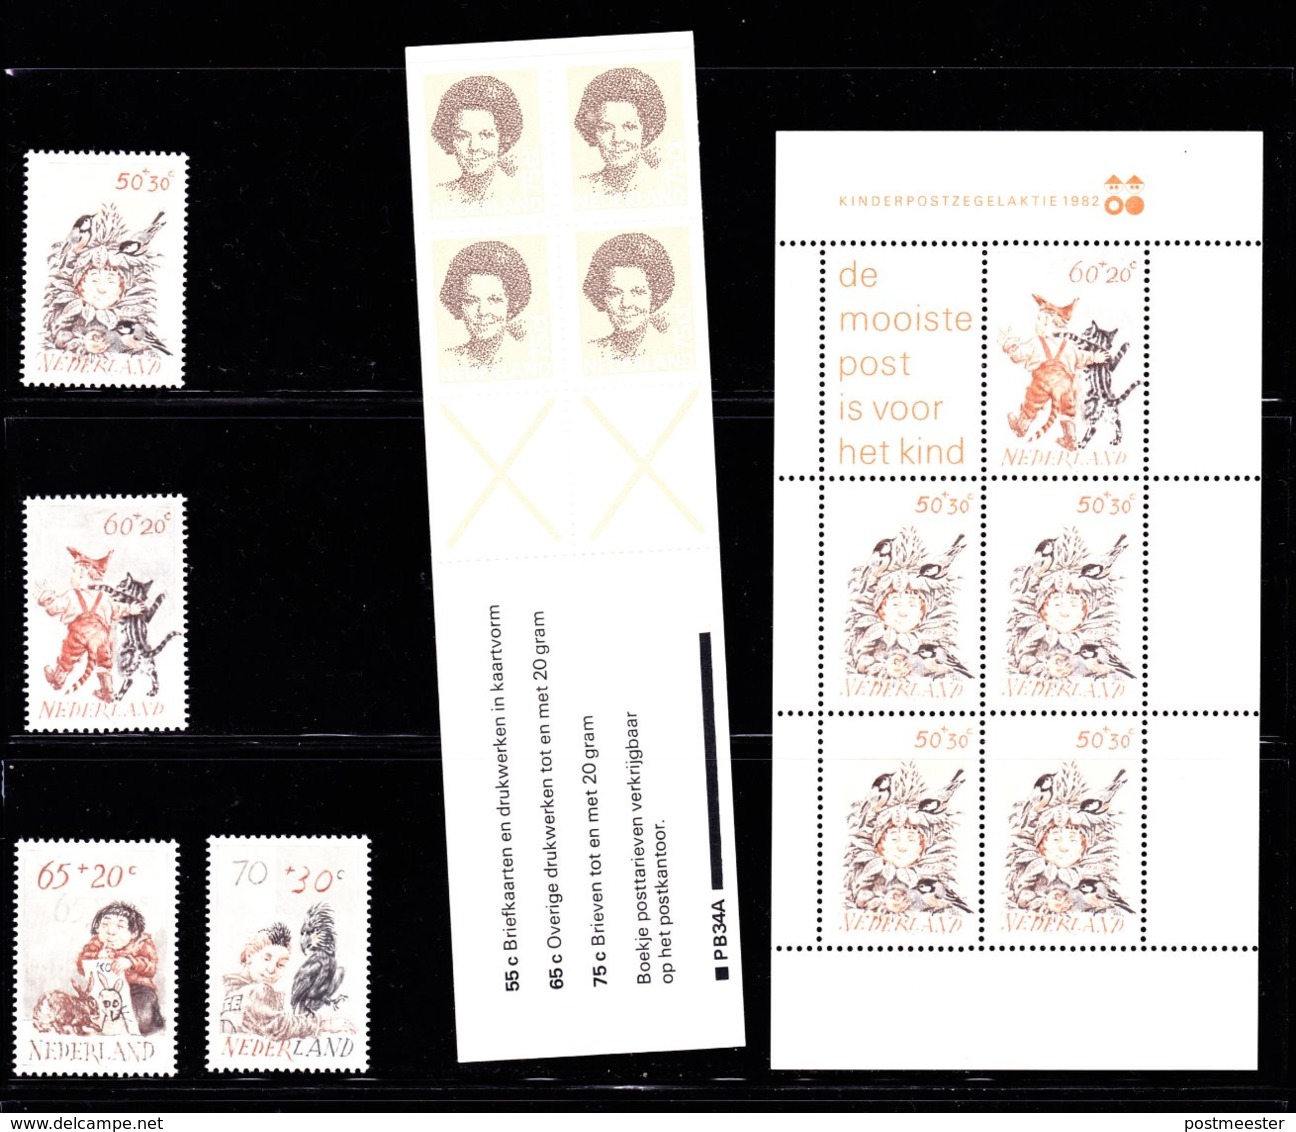 Nederland: Volledig Jaar 1982 - 19 Zegels, 1 Blok, 1 Boekje - Postfris - Années Complètes